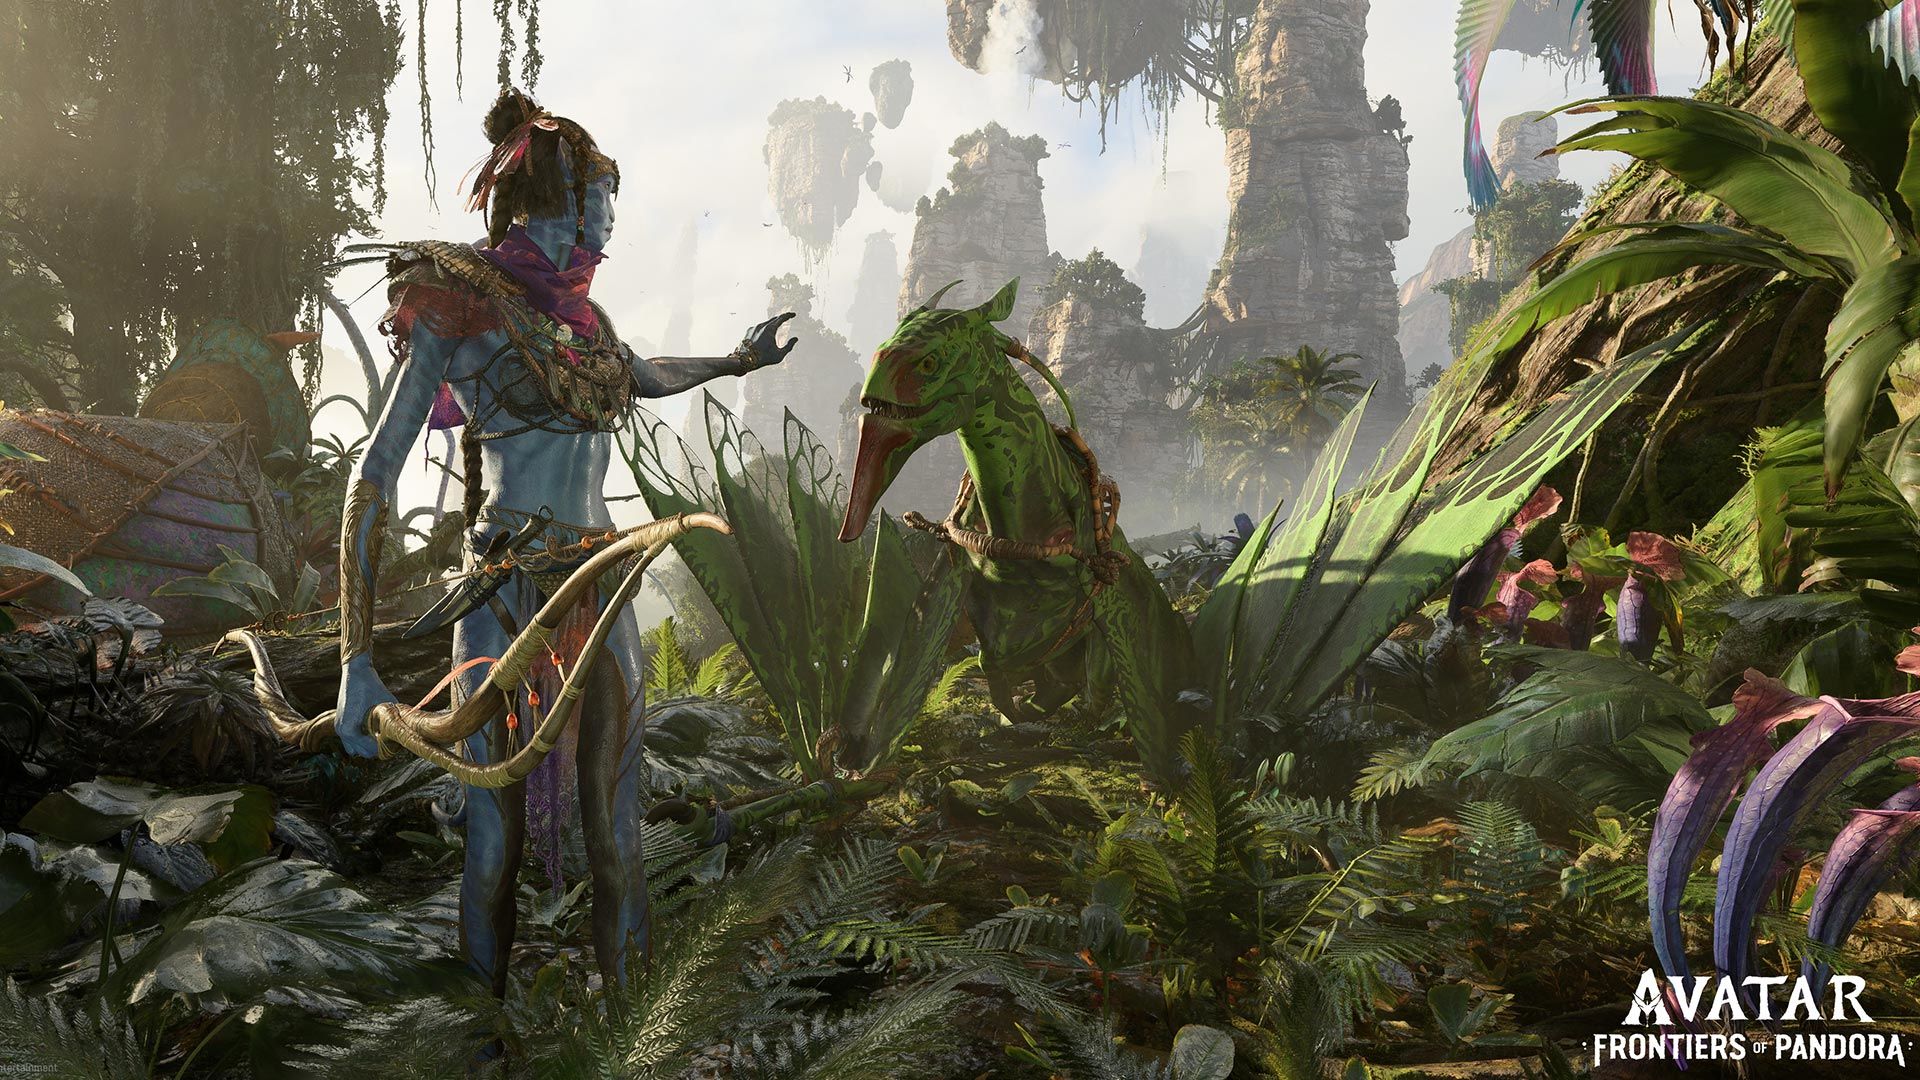 Trỗi dậy với những công nghệ mới nhất và ảnh đẹp nhất trong Avatar: Frontiers of Pandora. Choáng ngợp trước sức mạnh của động vật Na\'vi, vũ khí mới và trang bị khiến trò chơi này trông còn tuyệt vời hơn nữa.